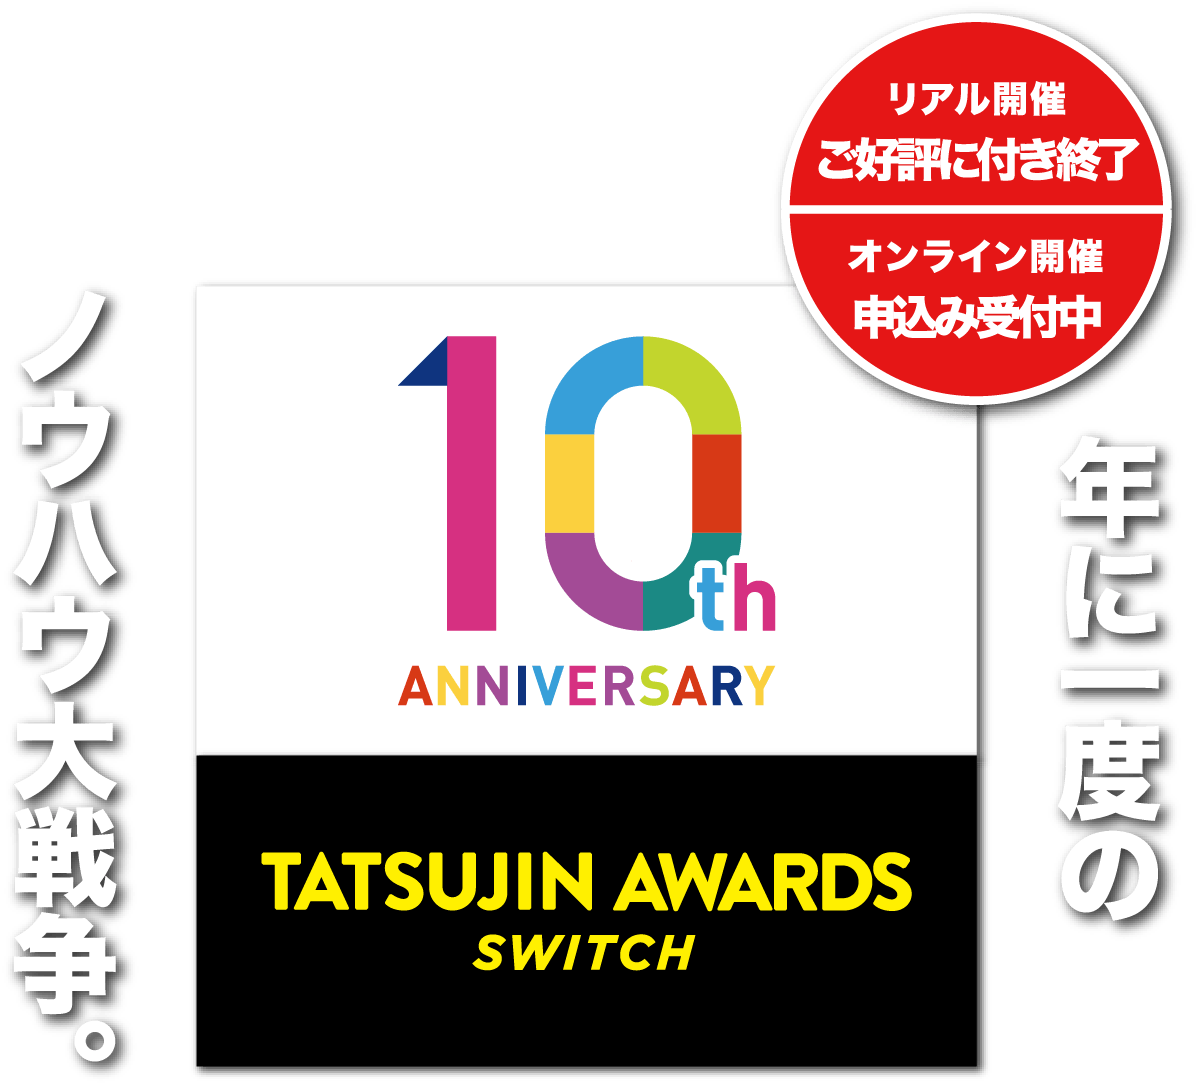 TATSUJIN AWARDS SWITCH